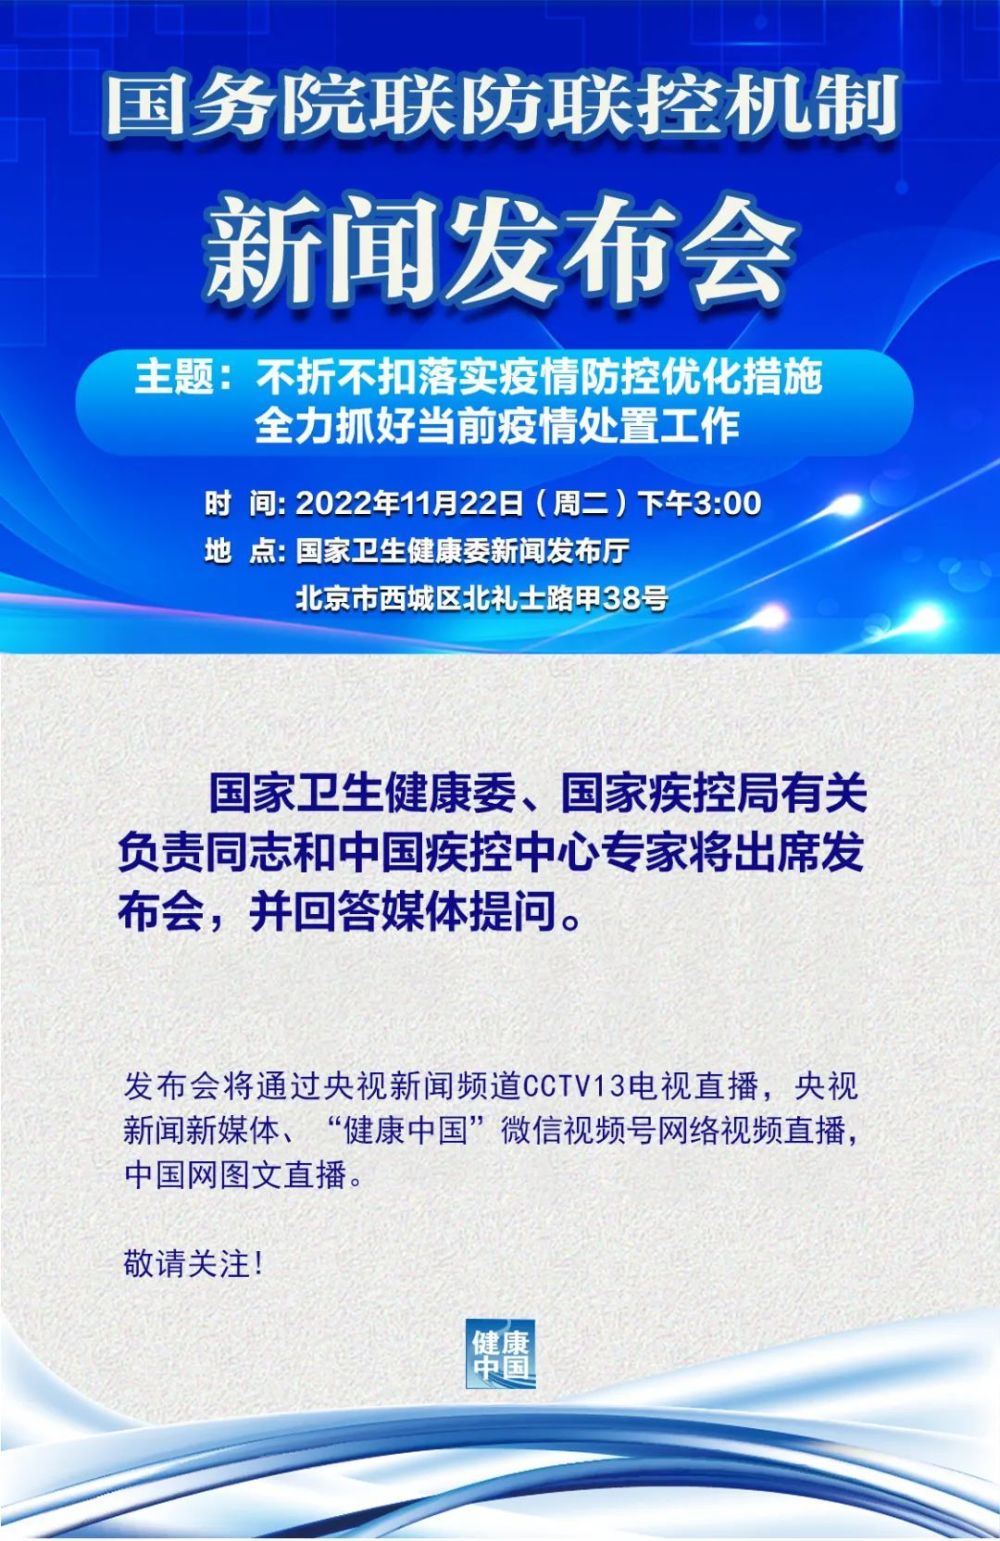 国务院联防联控机制将于22日下午3:00举行新闻发布会刘德华芝华仕代言费用多少钱